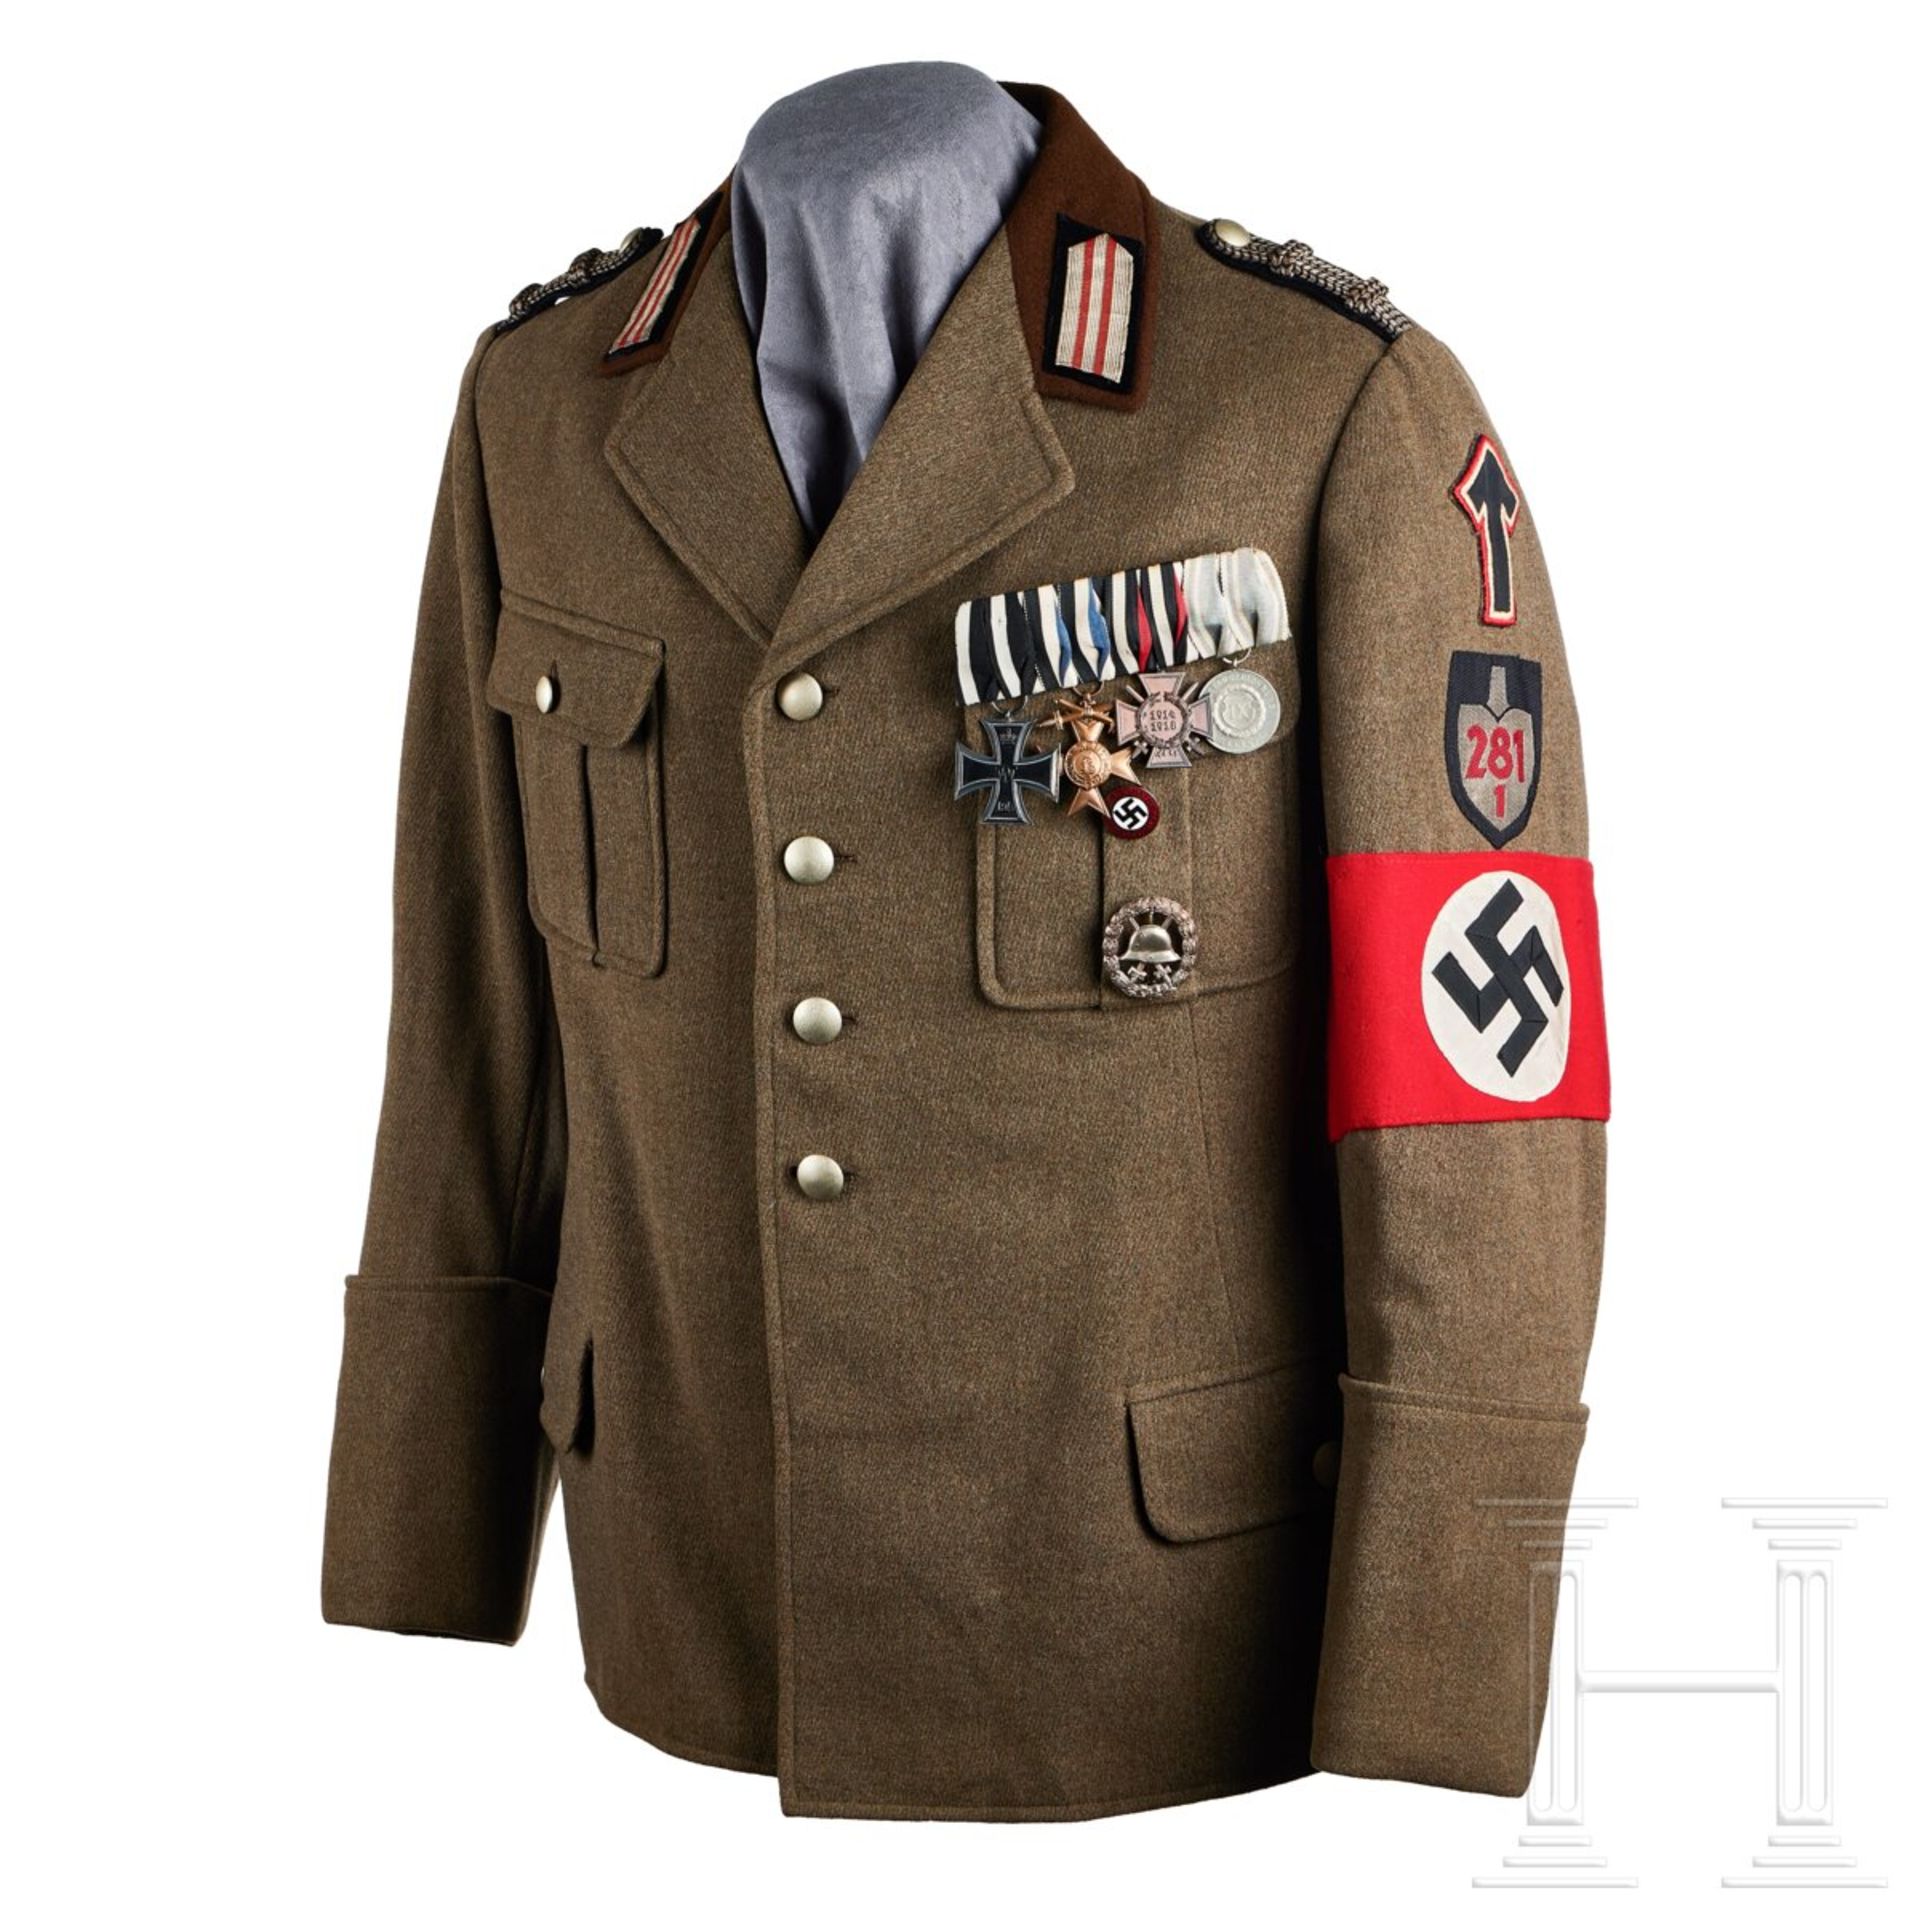 A RAD Officer Uniform